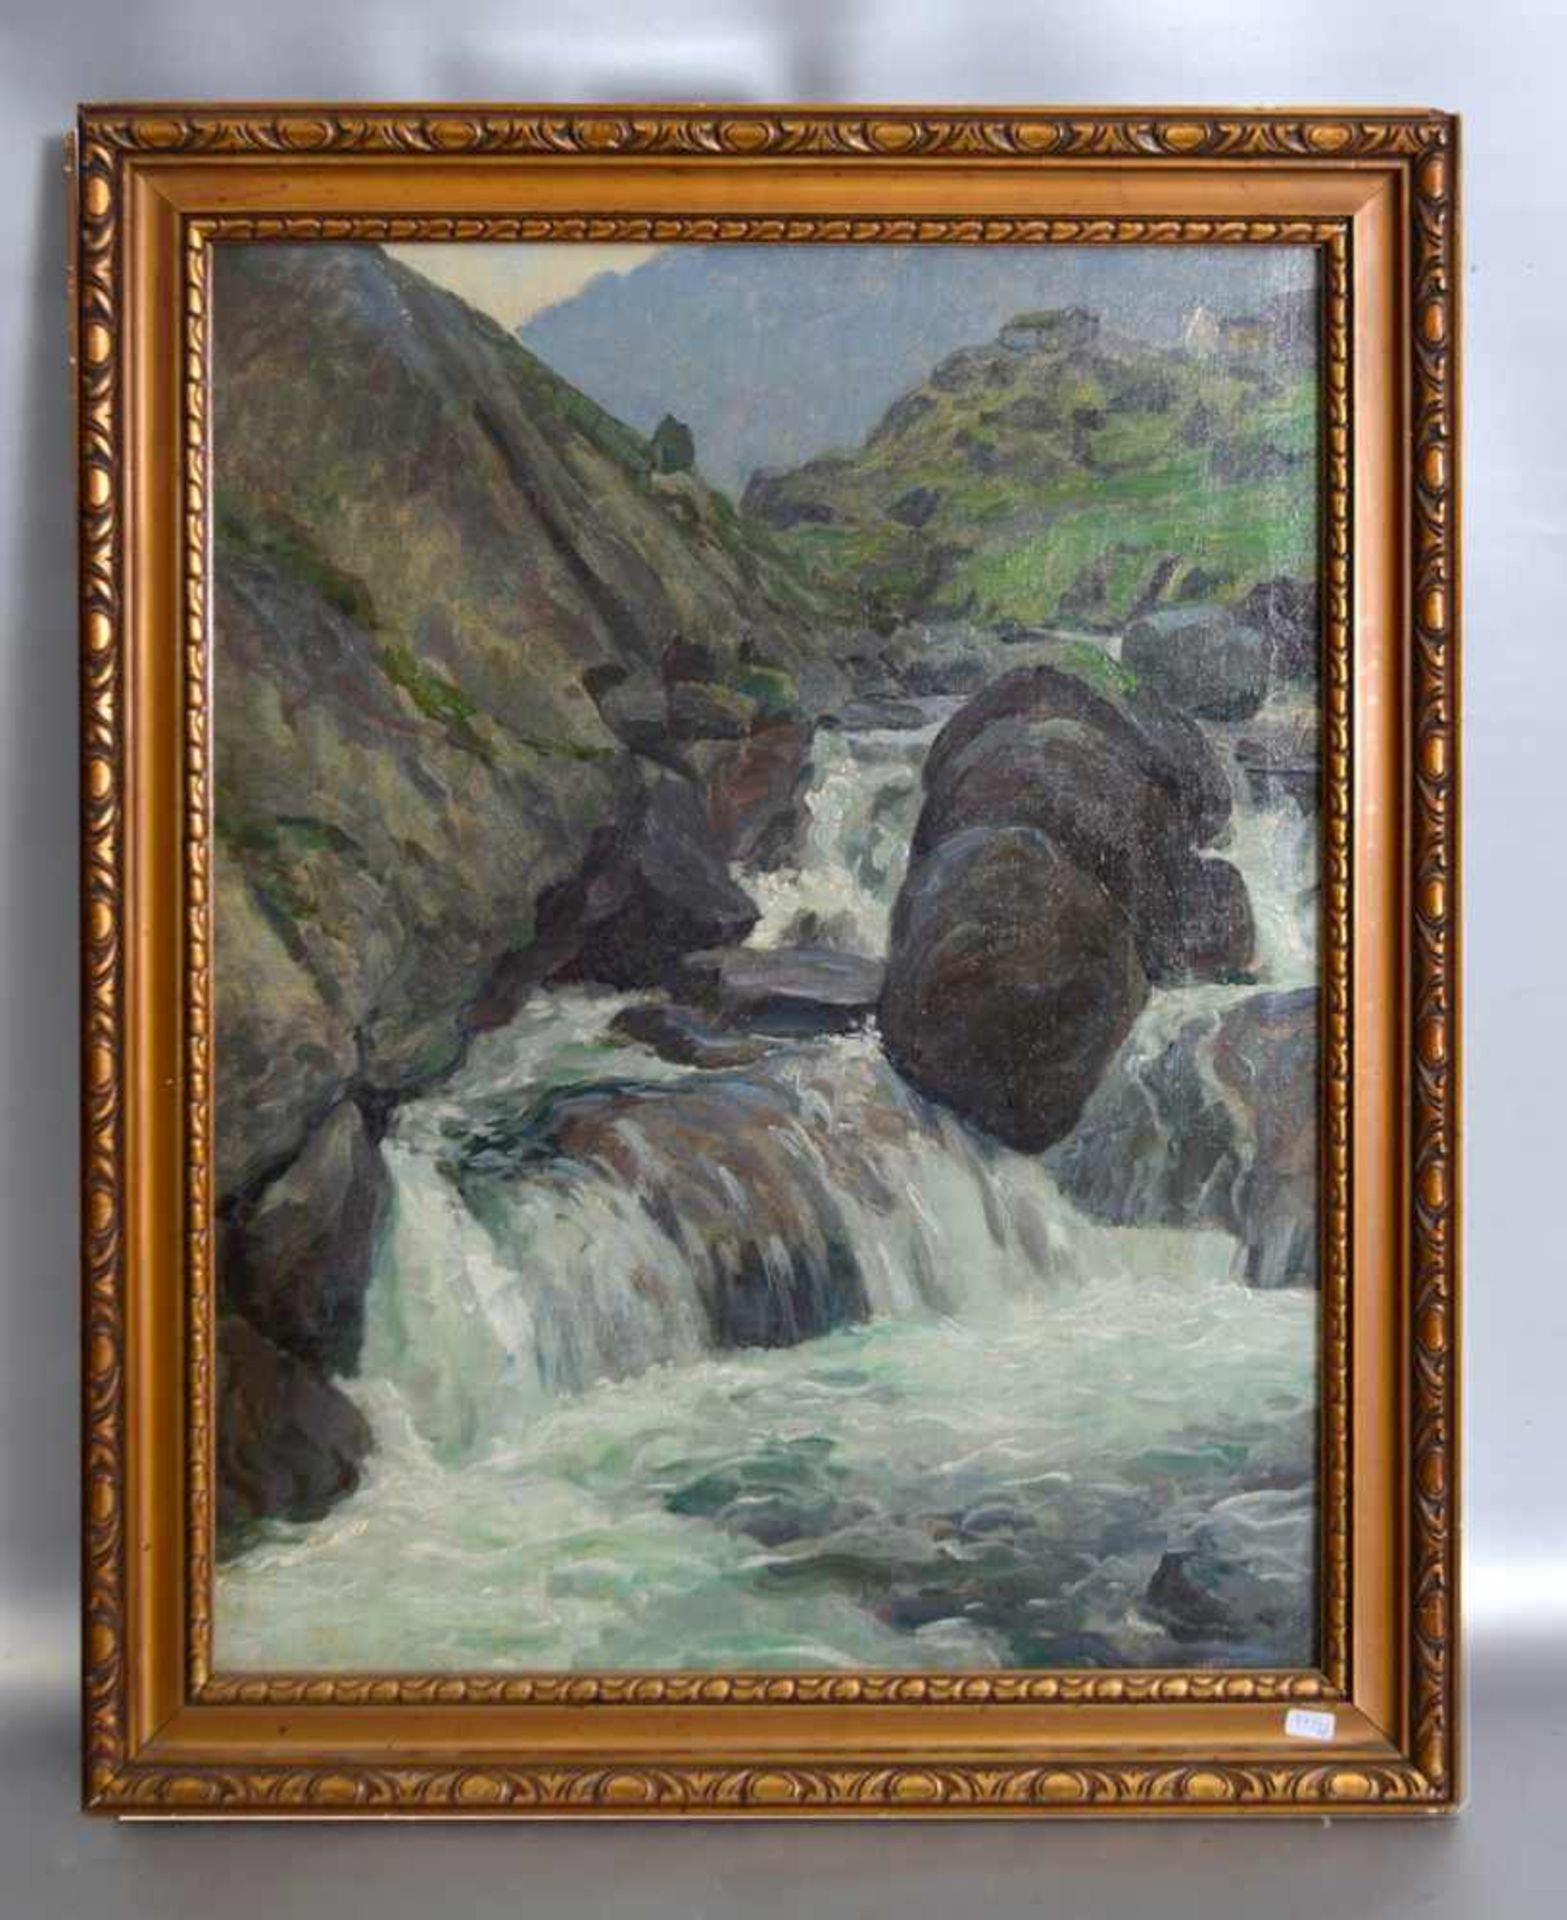 Unbekannter Malerum 1900, Wasserfall im Gebirge, Öl/Lwd., 43 X 56 cm, Rahmen